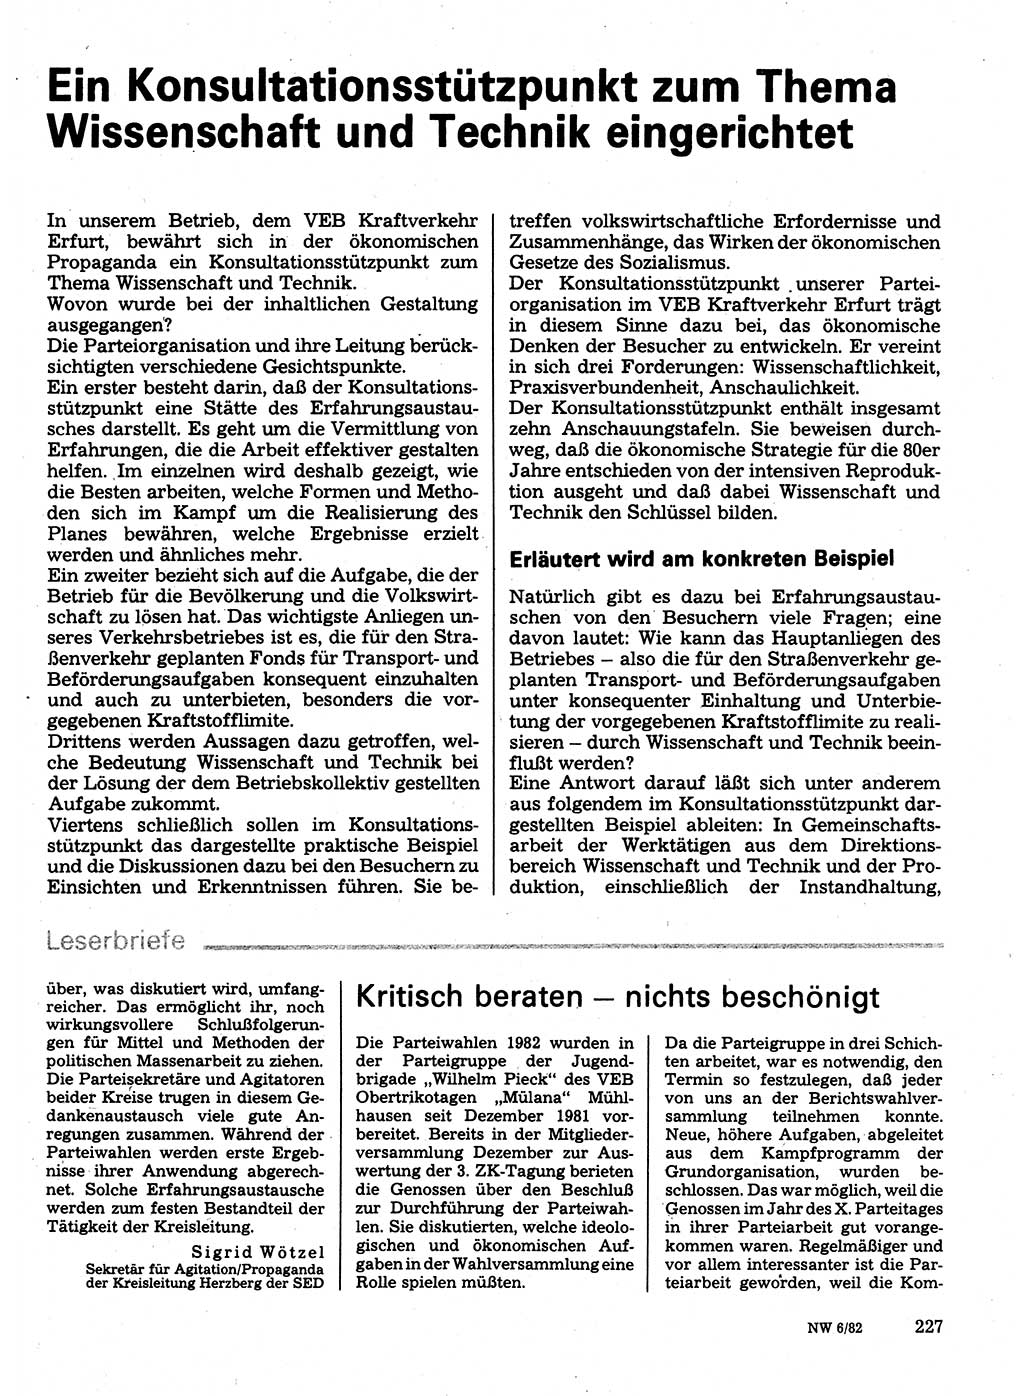 Neuer Weg (NW), Organ des Zentralkomitees (ZK) der SED (Sozialistische Einheitspartei Deutschlands) für Fragen des Parteilebens, 37. Jahrgang [Deutsche Demokratische Republik (DDR)] 1982, Seite 227 (NW ZK SED DDR 1982, S. 227)